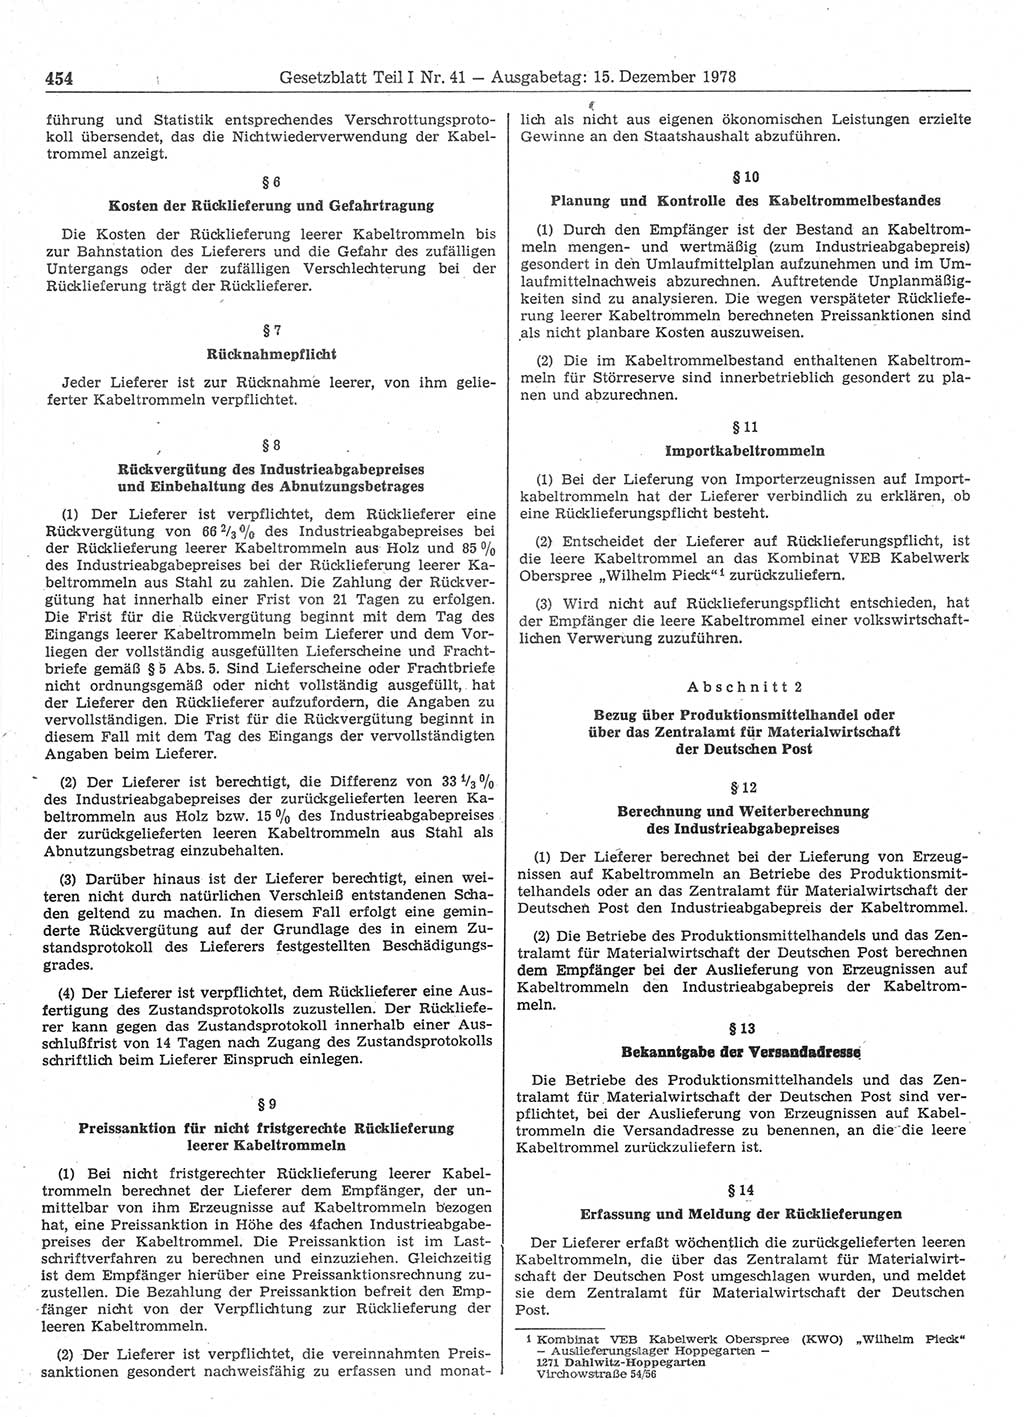 Gesetzblatt (GBl.) der Deutschen Demokratischen Republik (DDR) Teil Ⅰ 1978, Seite 454 (GBl. DDR Ⅰ 1978, S. 454)